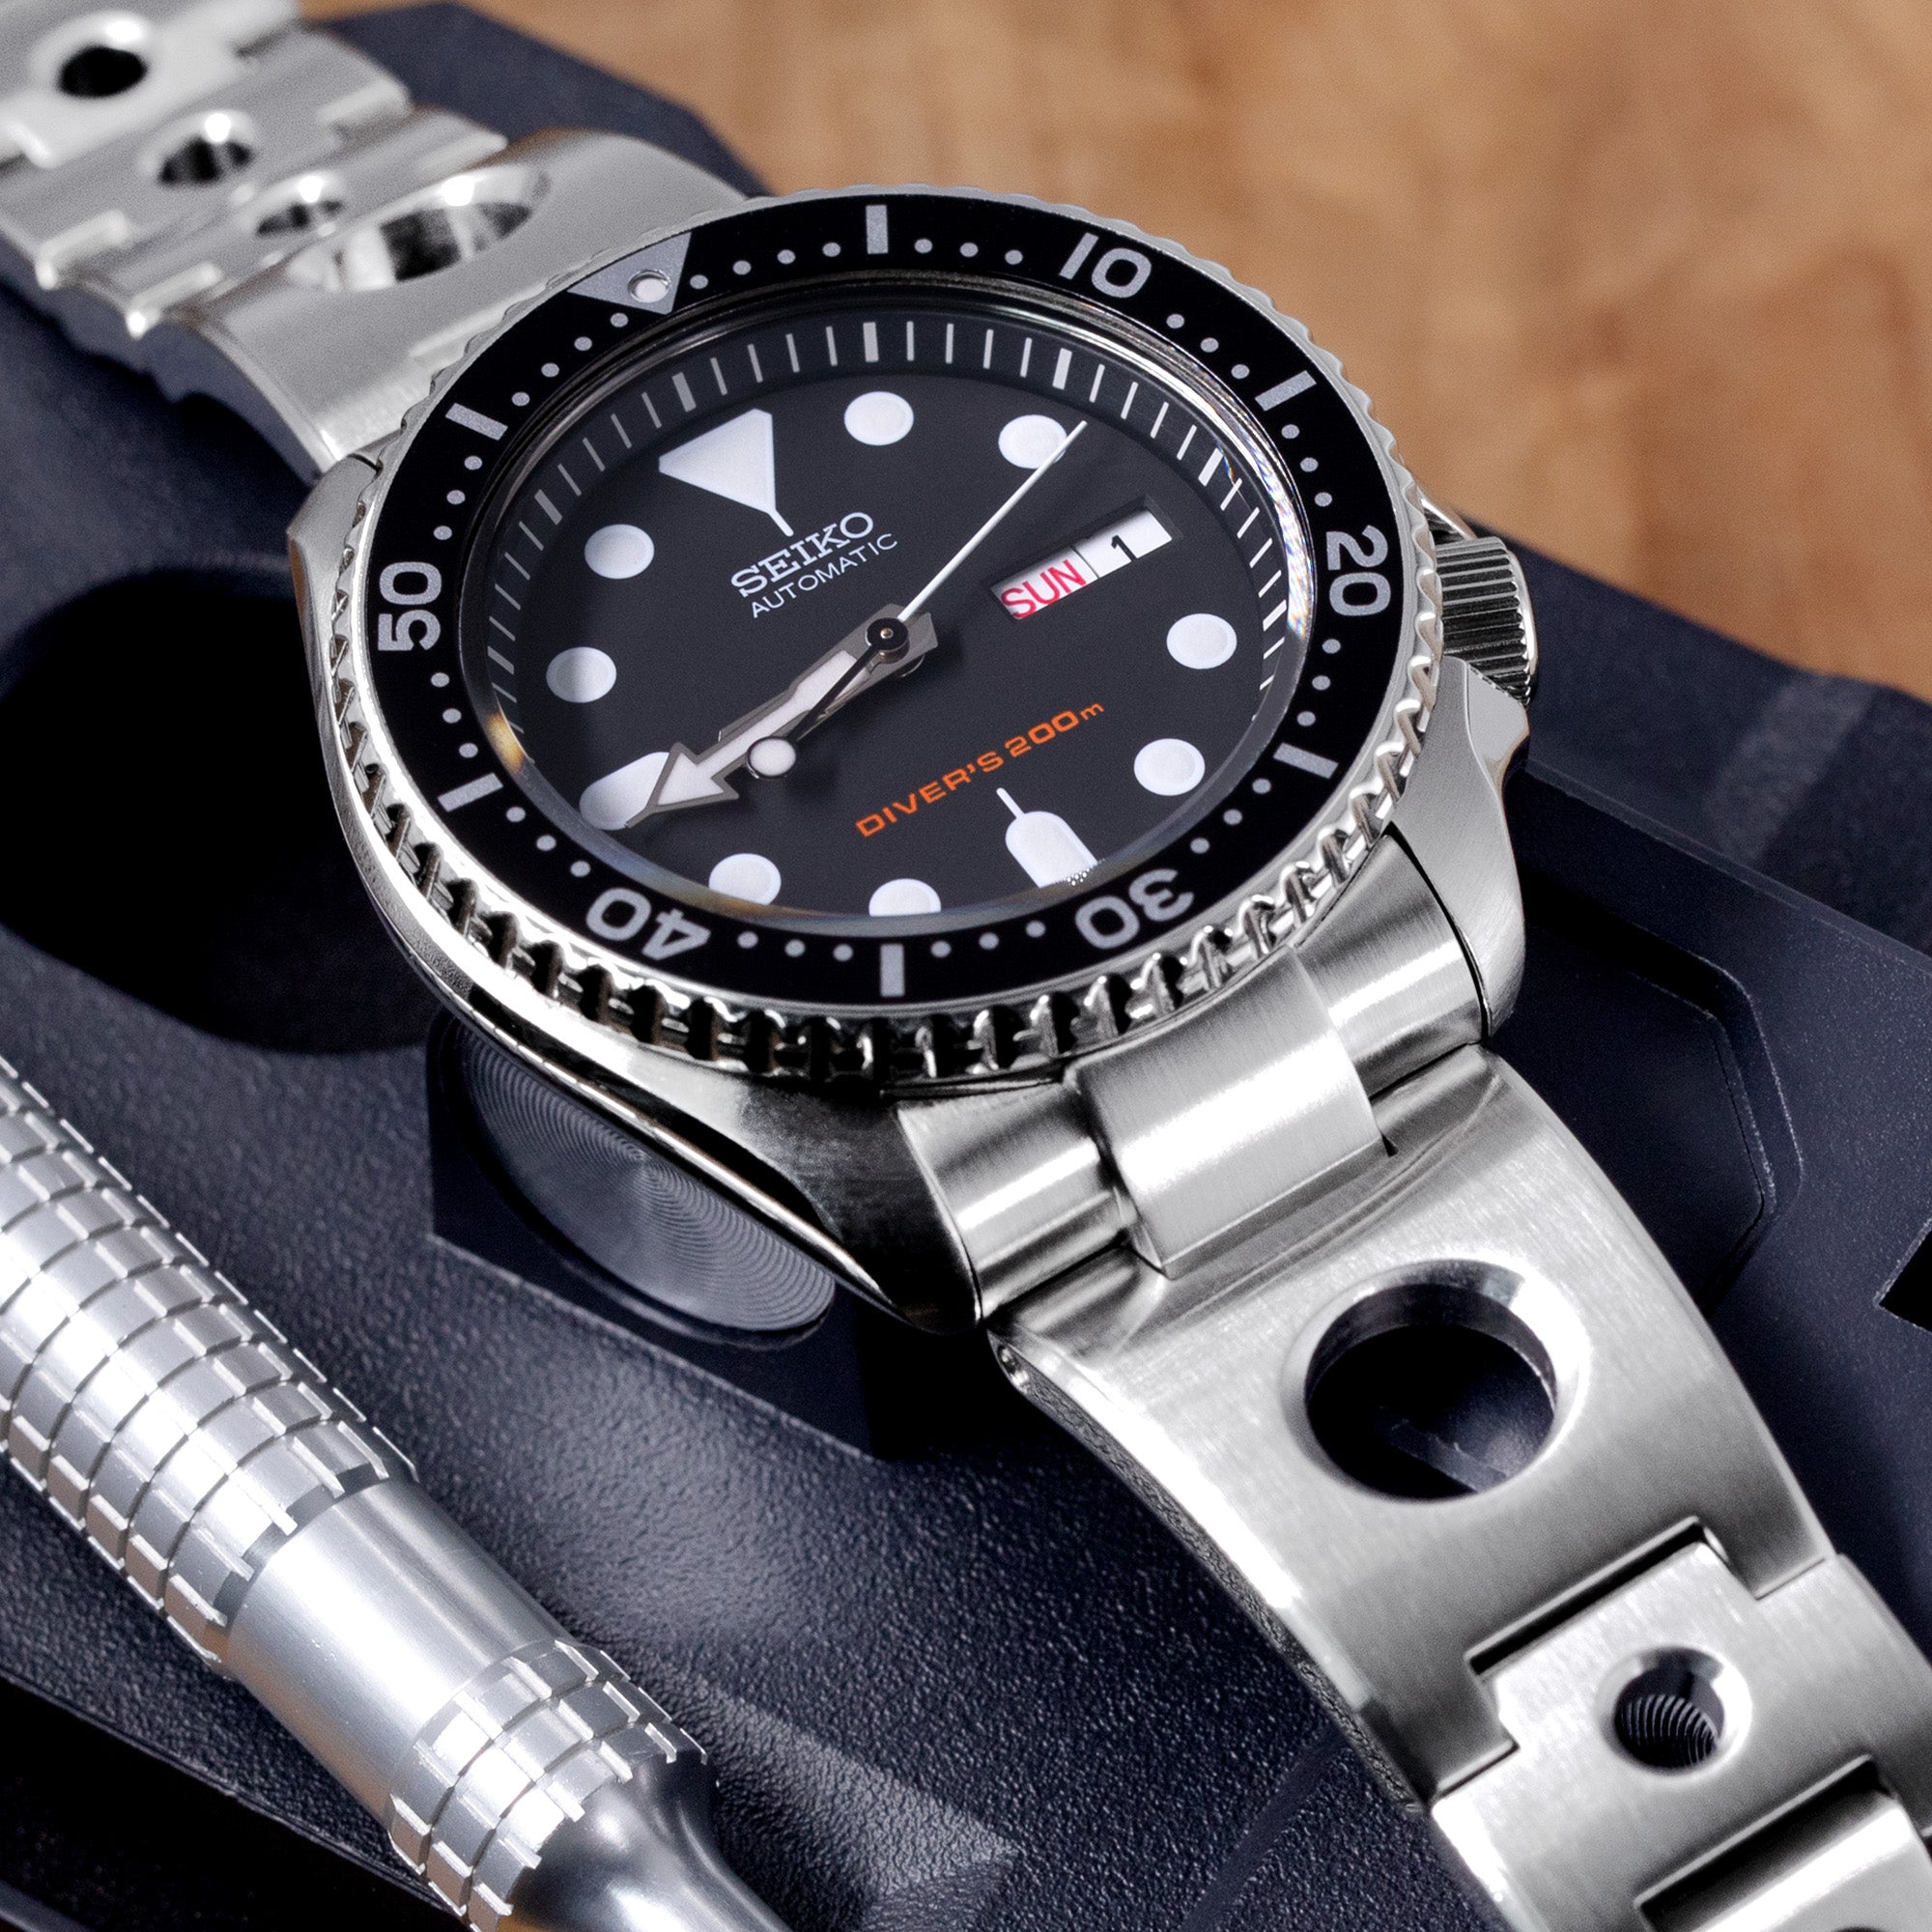 22mm oyster Stainless Steel Watch Bracelet For Seiko SKX007 SRPDK1 SRPD51  SRPD53 | eBay